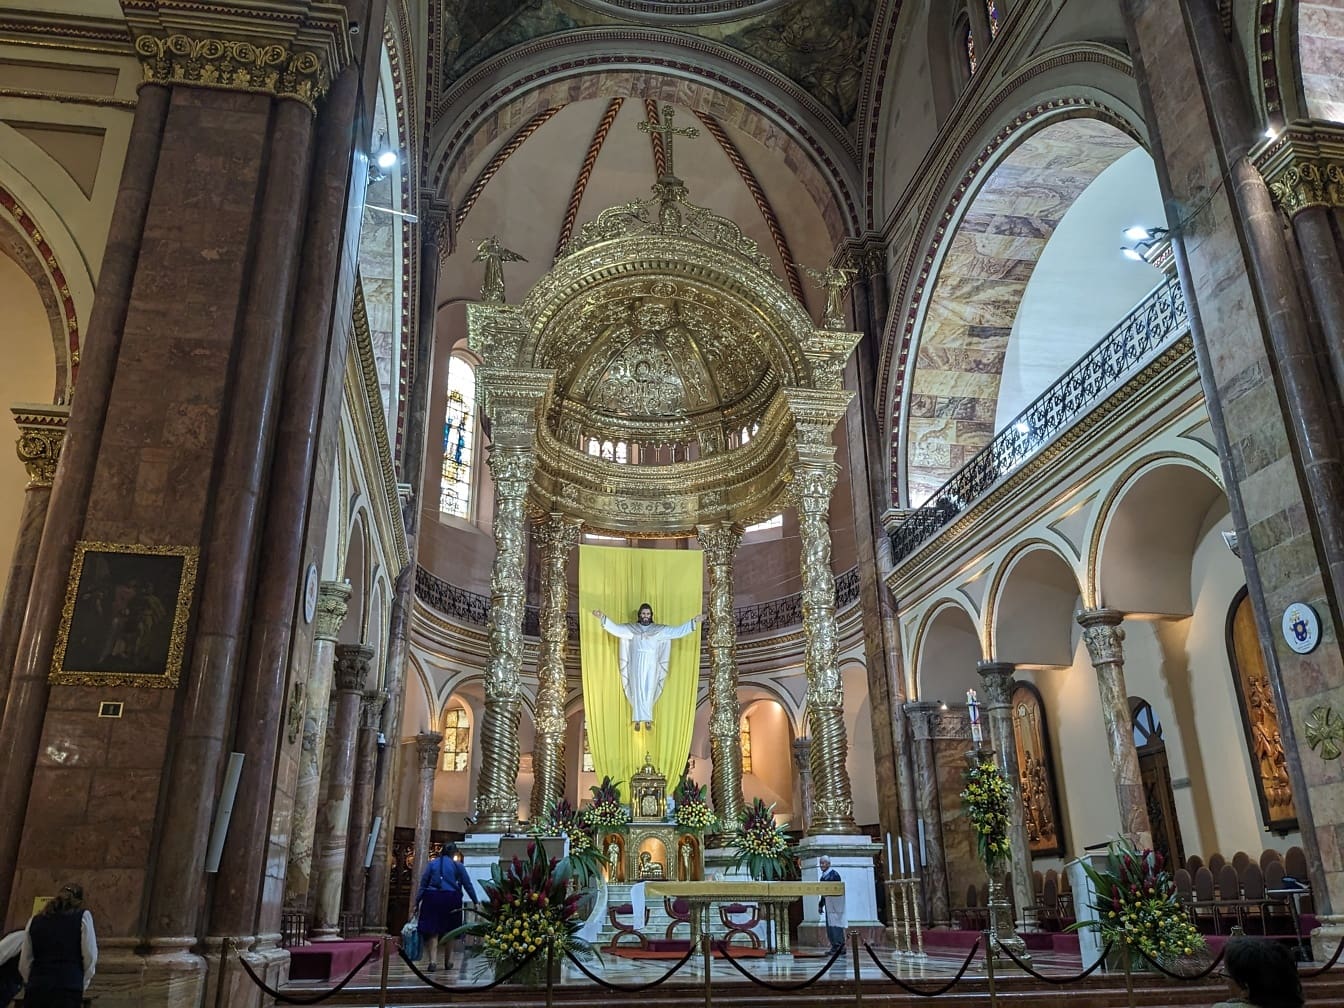 Μεγάλος χρυσός περίτεχνος βωμός με άγαλμα του Ιησού Χριστού στον νέο καθεδρικό ναό της Κουένκα στον Ισημερινό